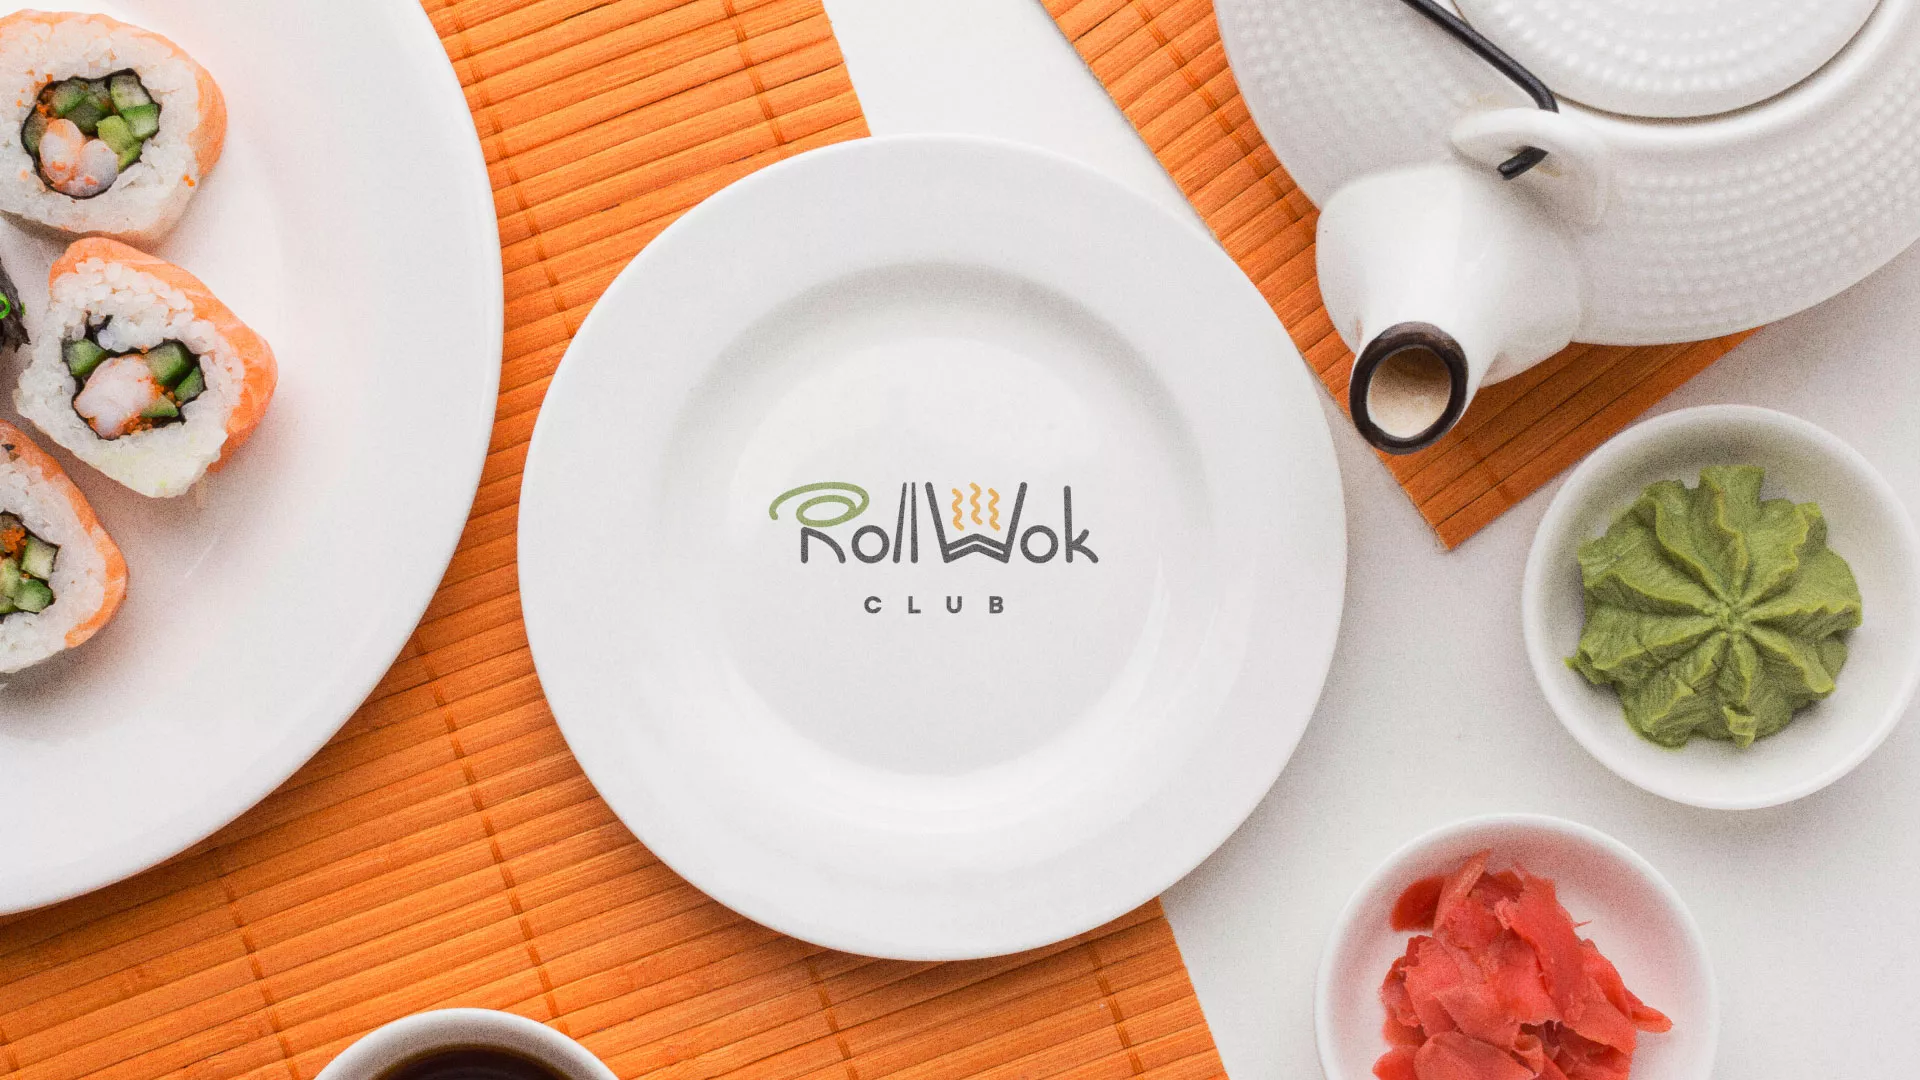 Разработка логотипа и фирменного стиля суши-бара «Roll Wok Club» в Альметьевске